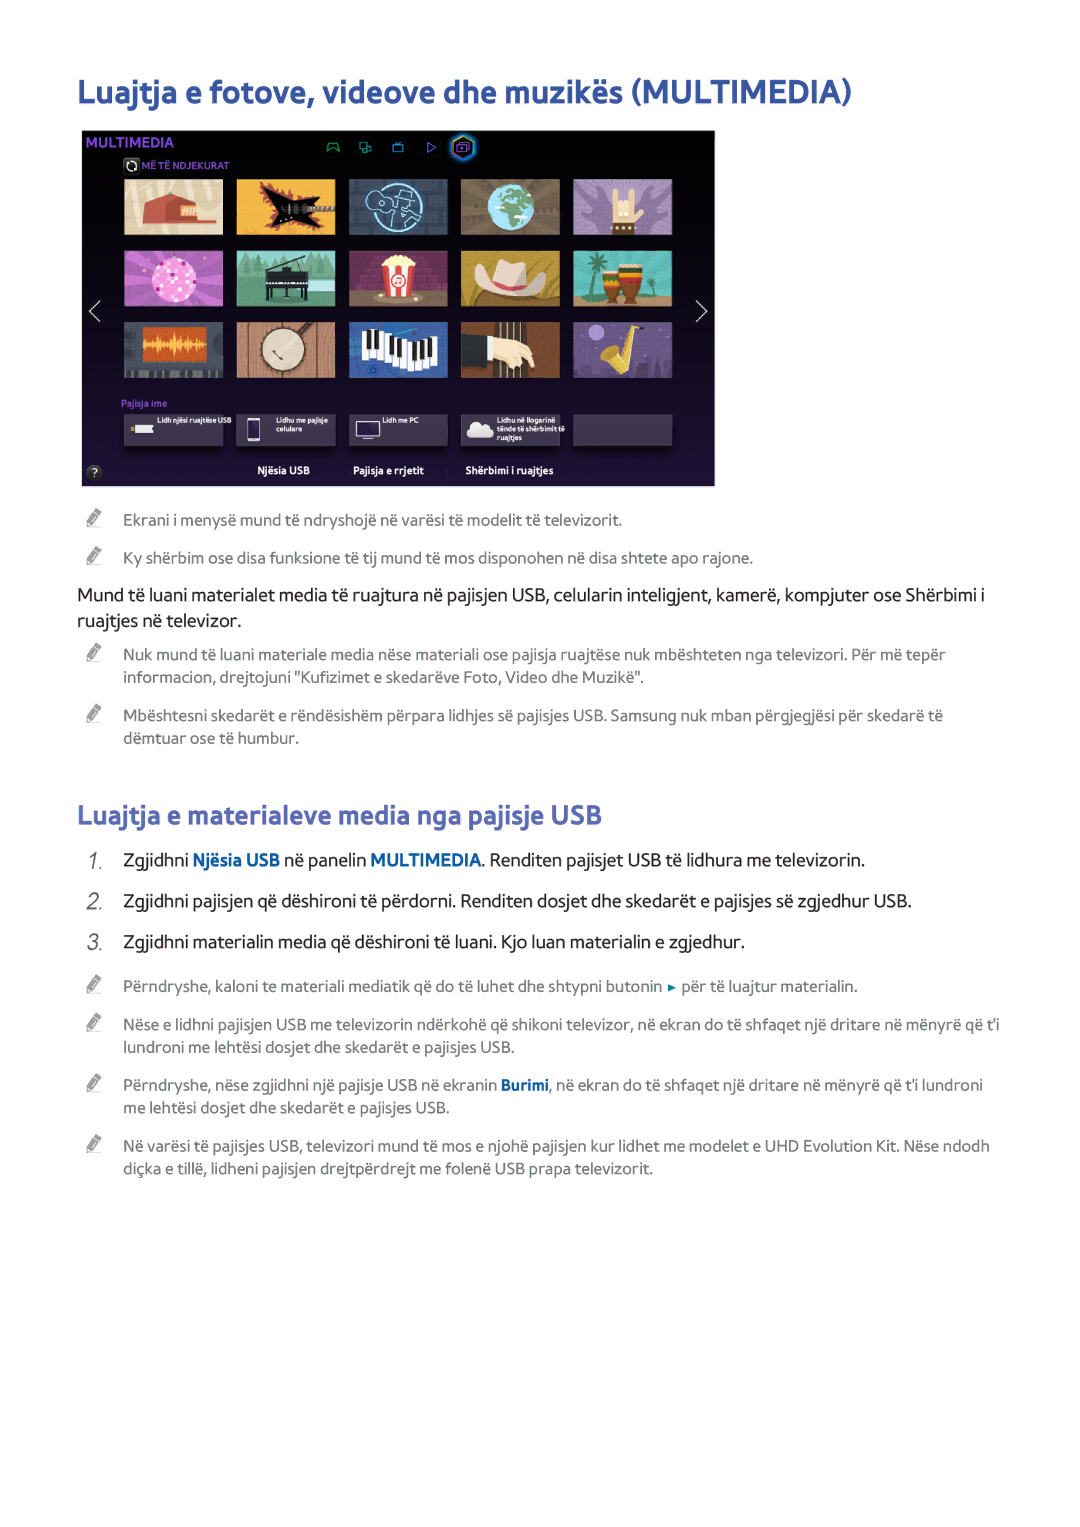 Samsung UE78HU8500TXXH manual Luajtja e fotove, videove dhe muzikës Multimedia, Luajtja e materialeve media nga pajisje USB 